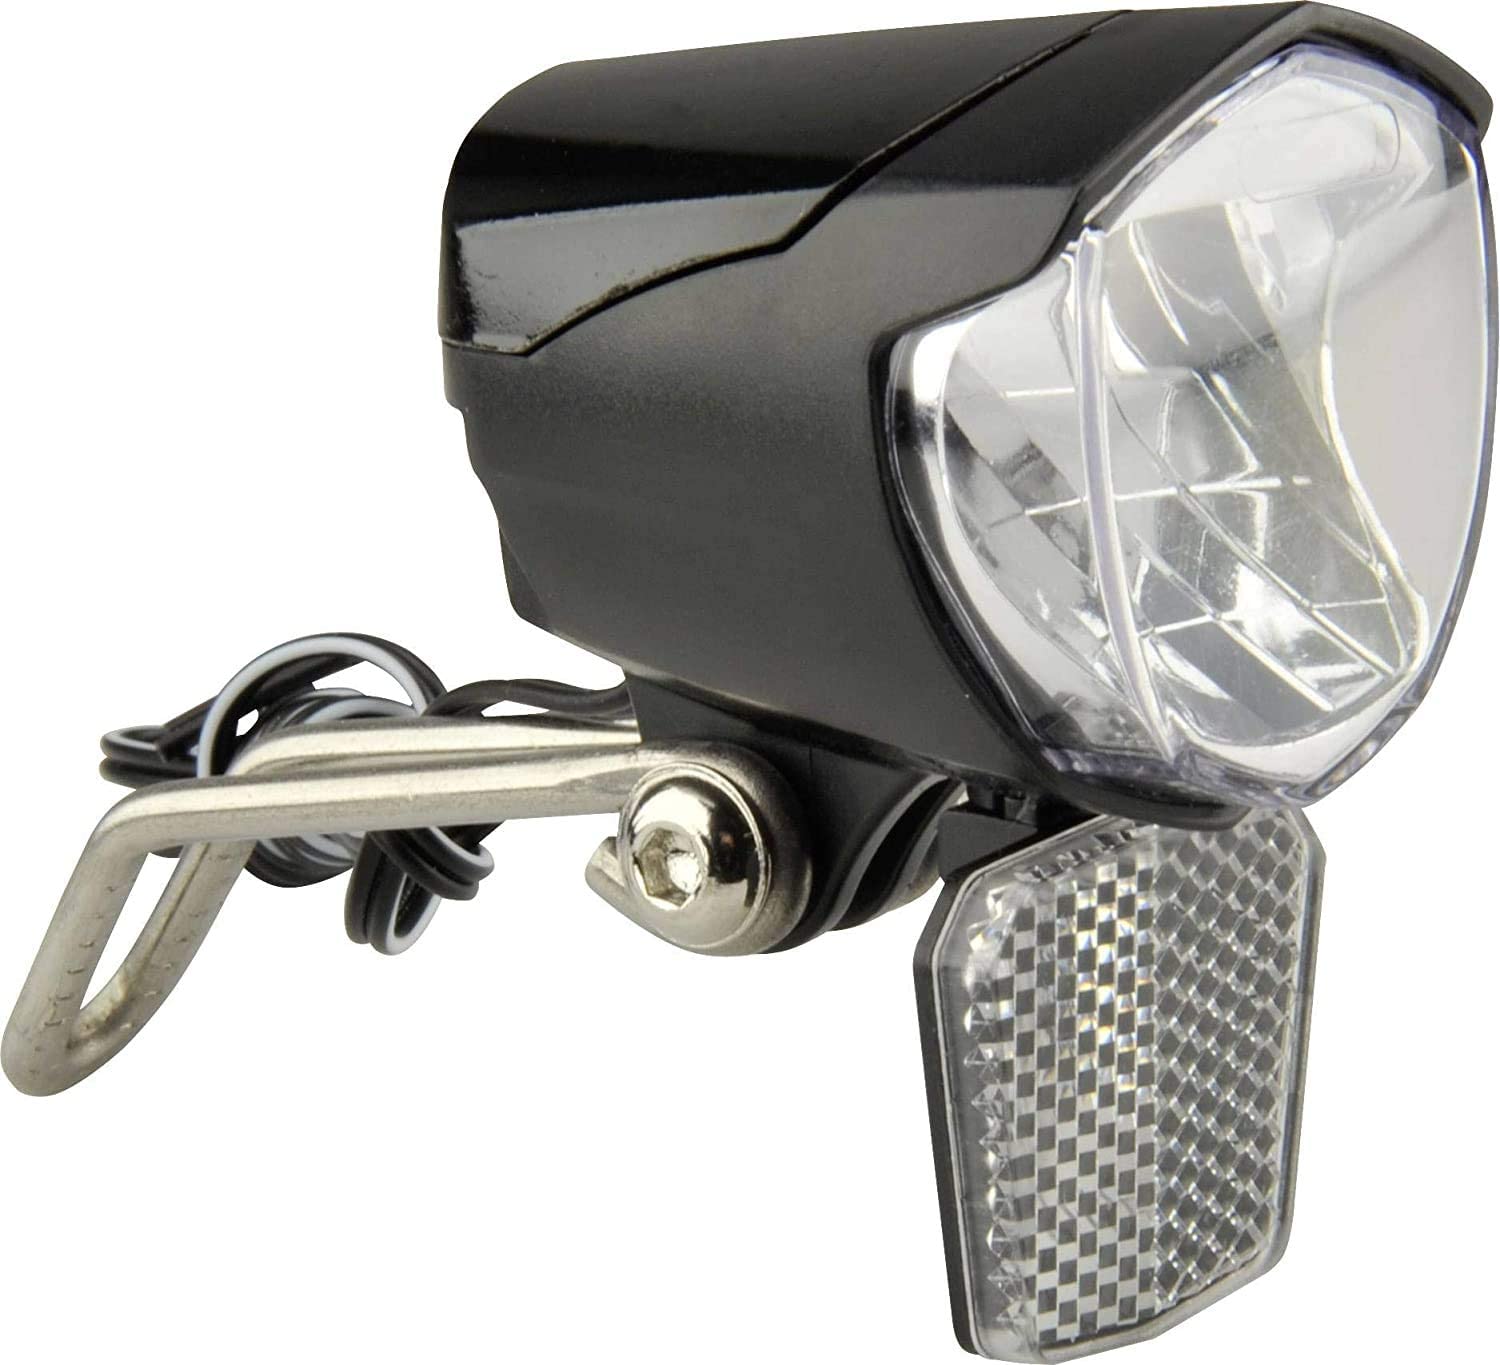 nean CREE LED 30 LUX Fahrrad Dynamo Frontleuchte mit Lichtautomatik u